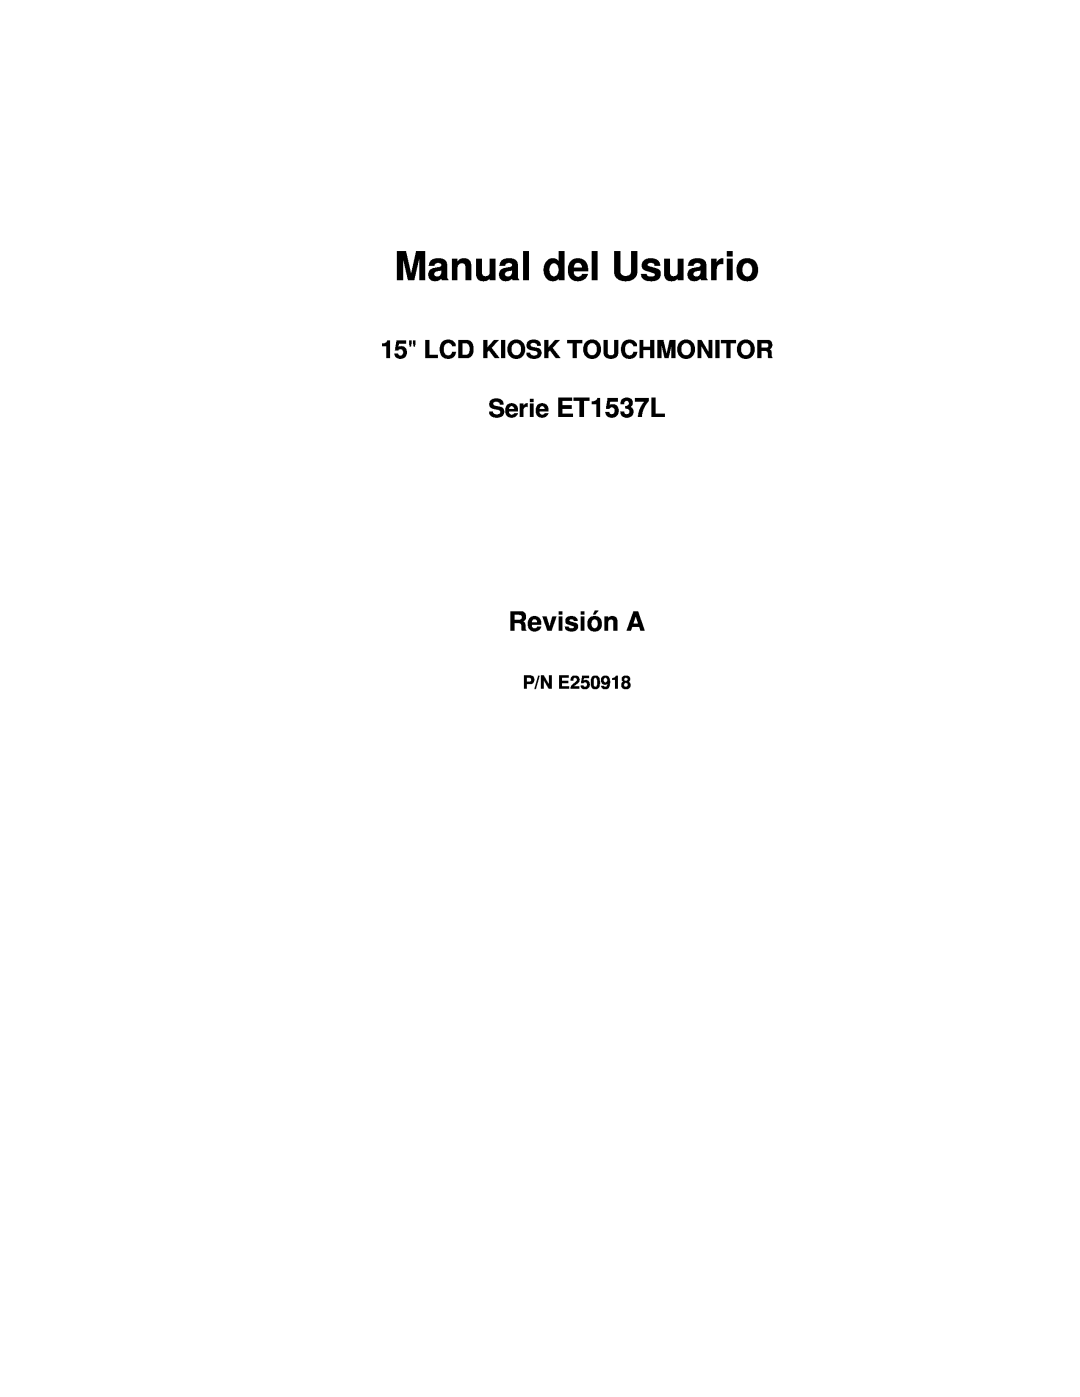 Elo TouchSystems manual Manual del Usuario, Serie ET1537L Revisión A, P/N E250918, Lcd Kiosk Touchmonitor 